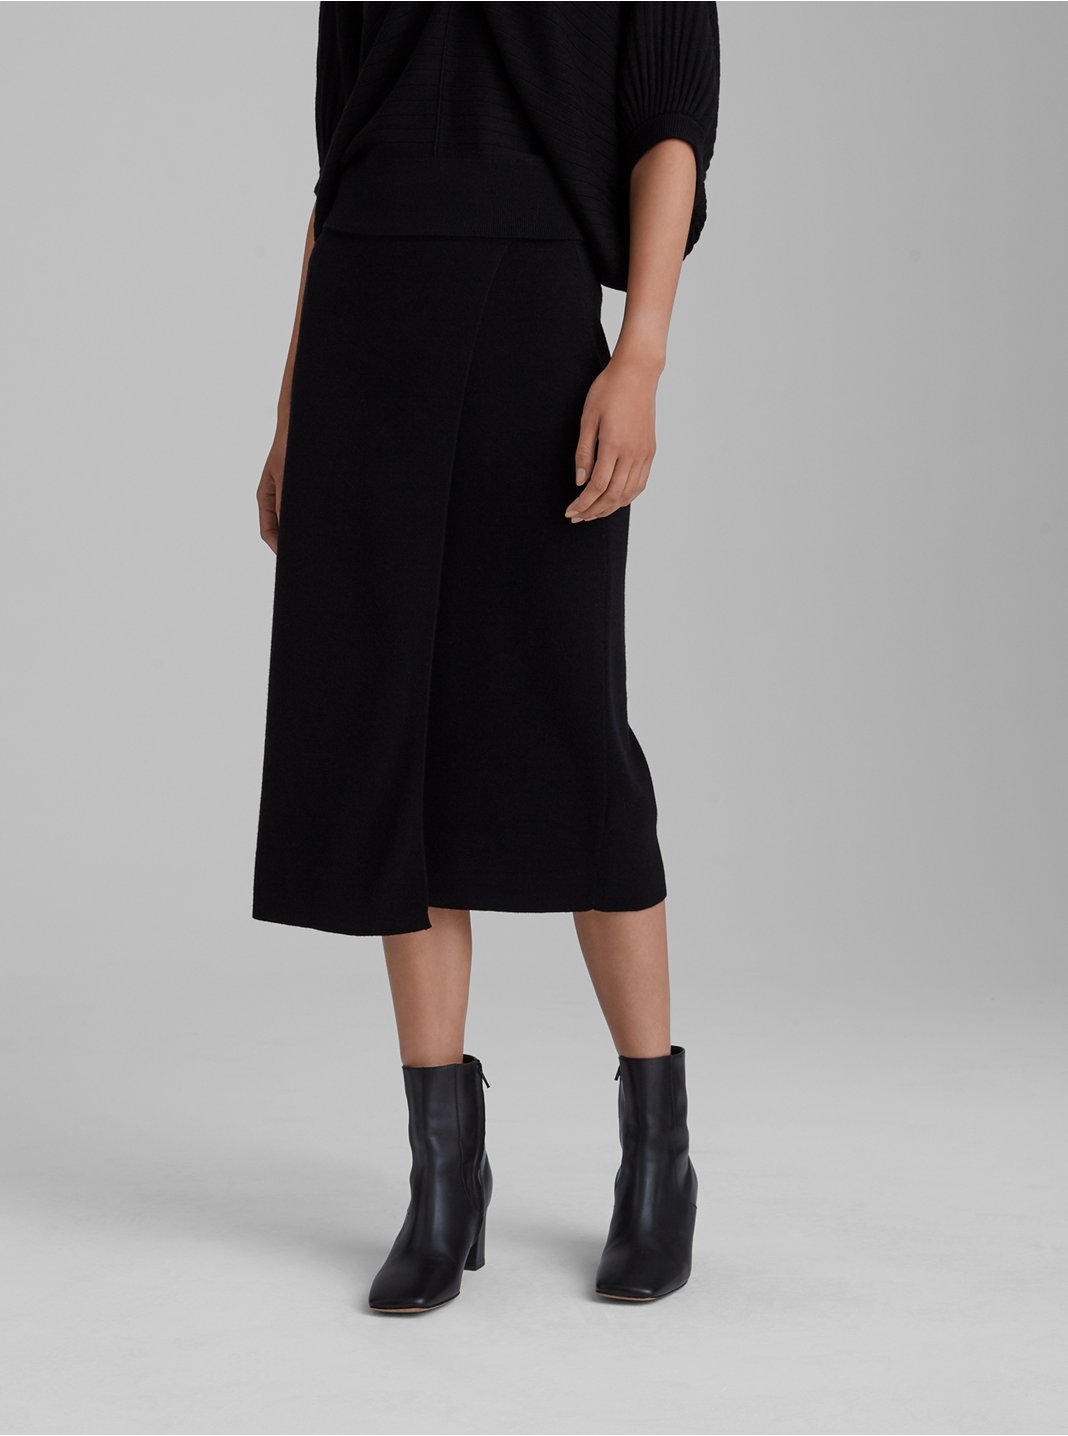 클럽 모나코 니트 스커트 Club Monaco Knit Midi Skirt,Black